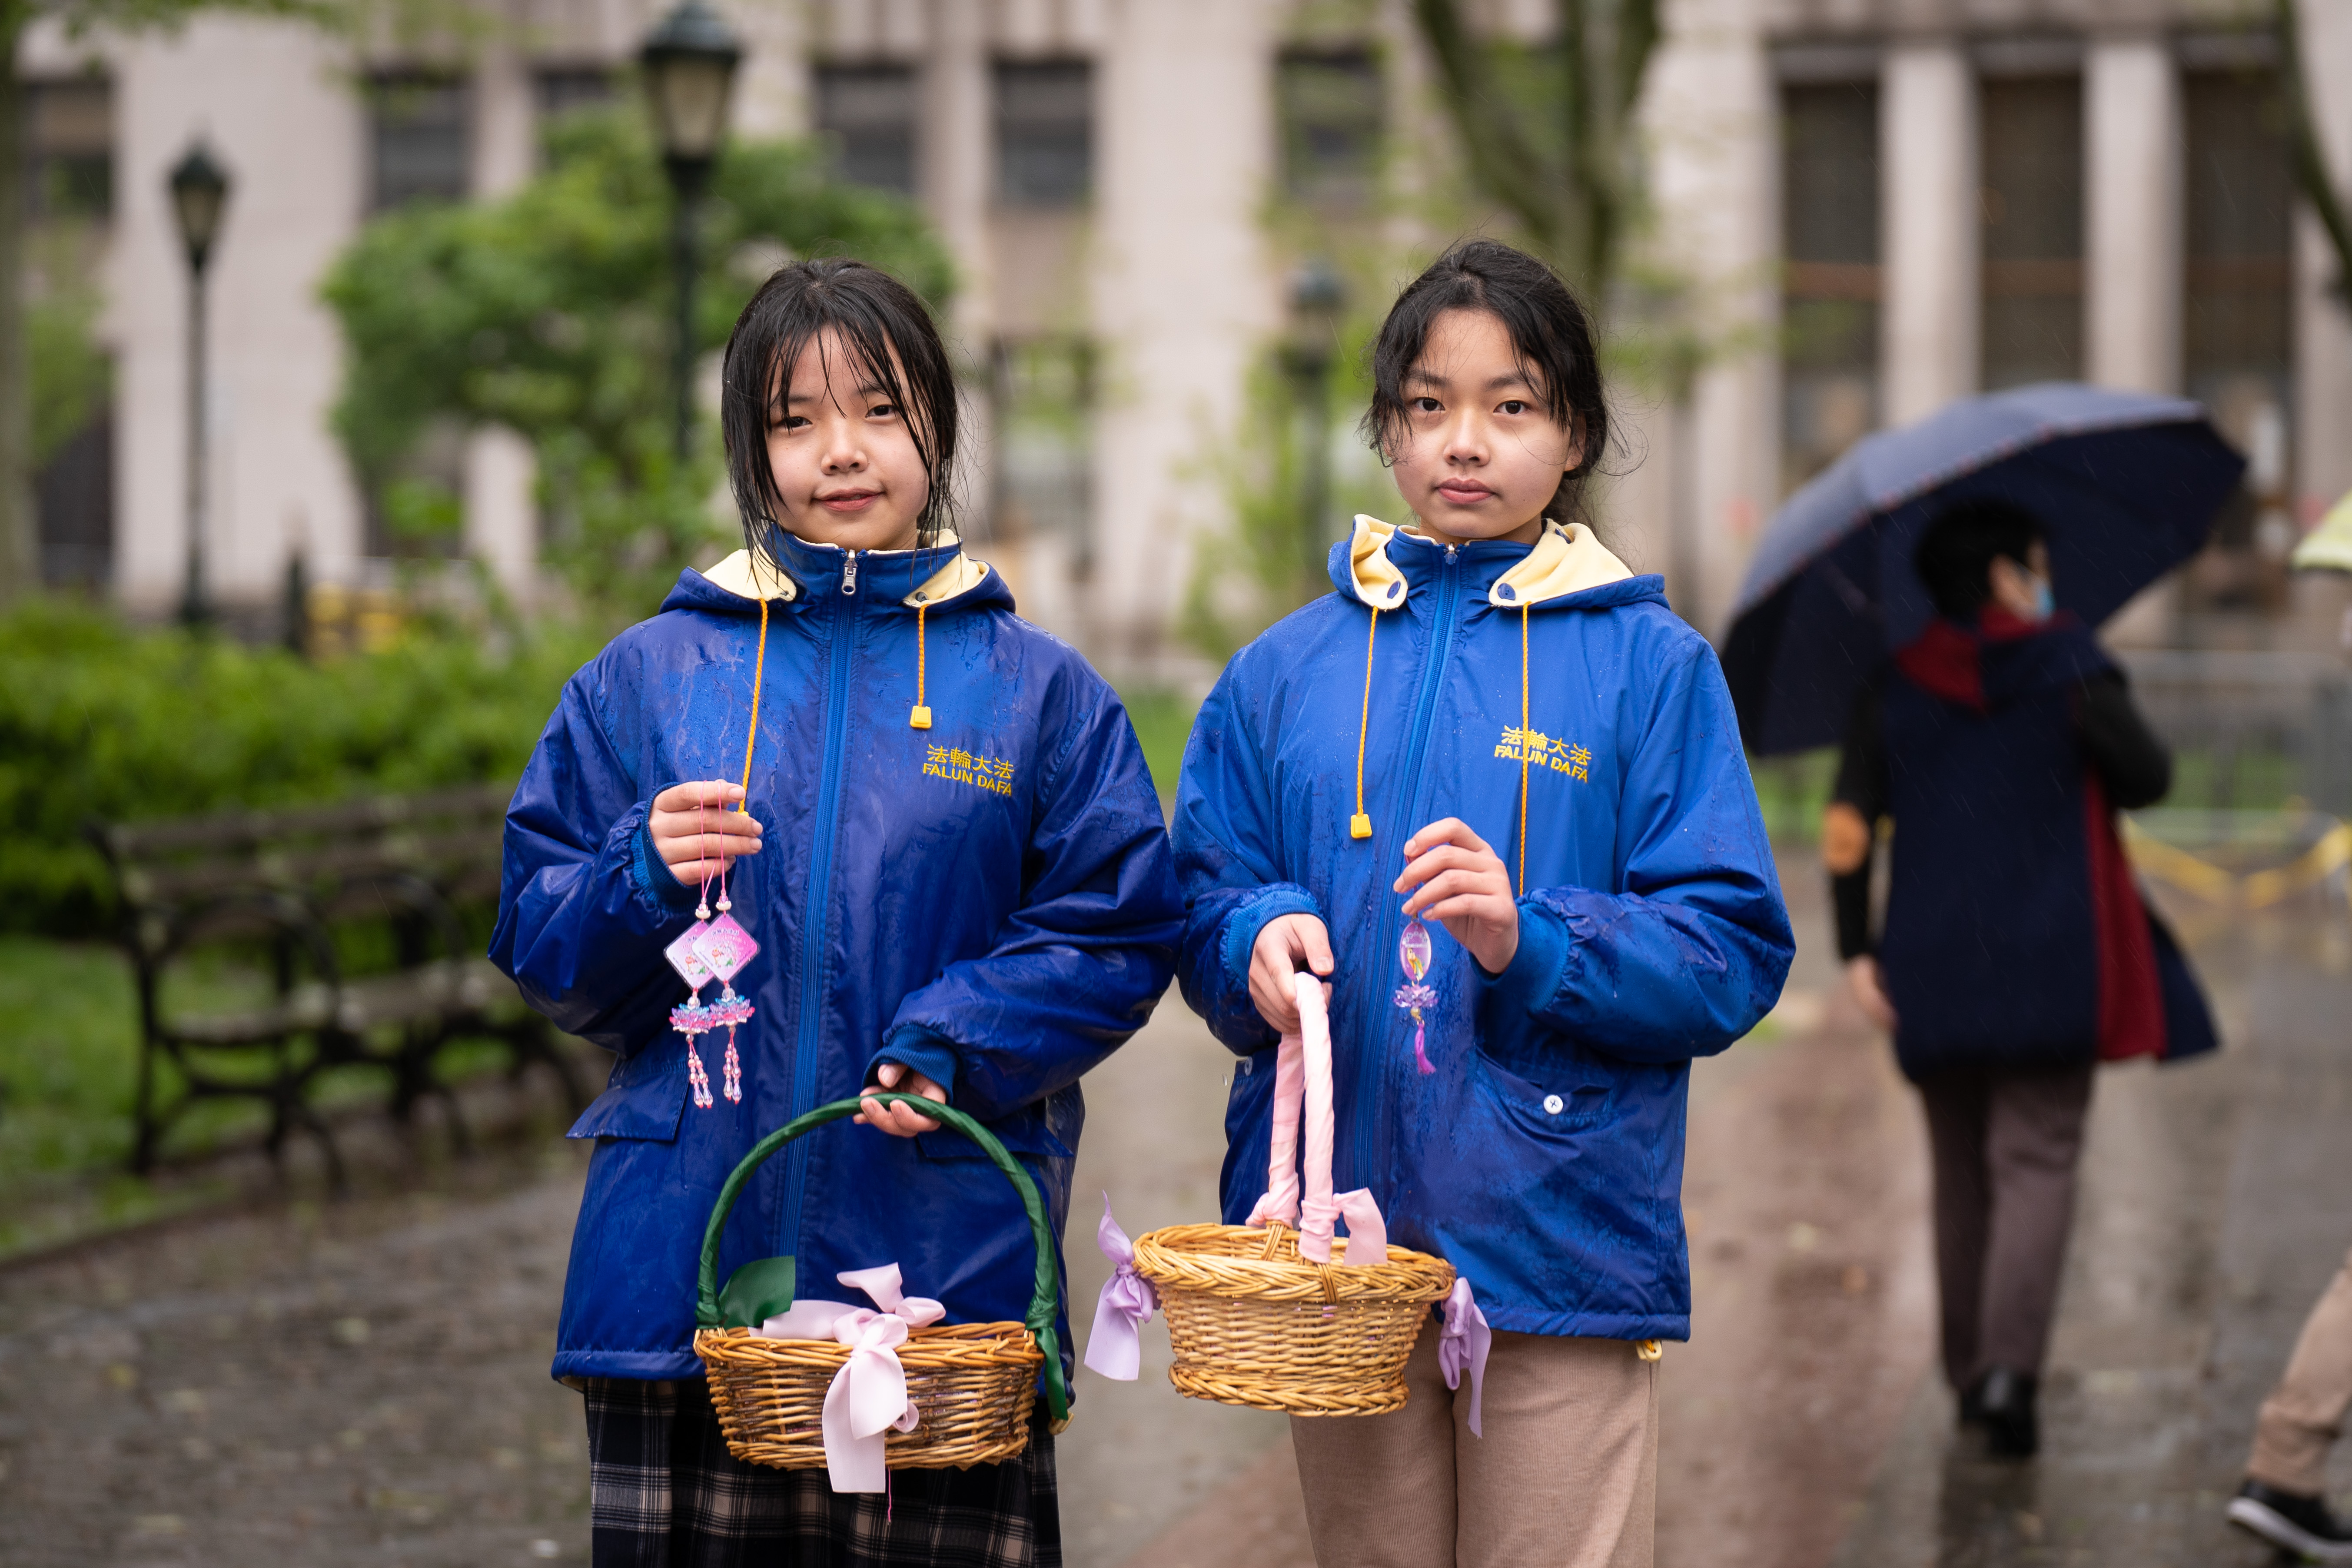  evento per celebrare la Giornata Mondiale della Falun Dafa 